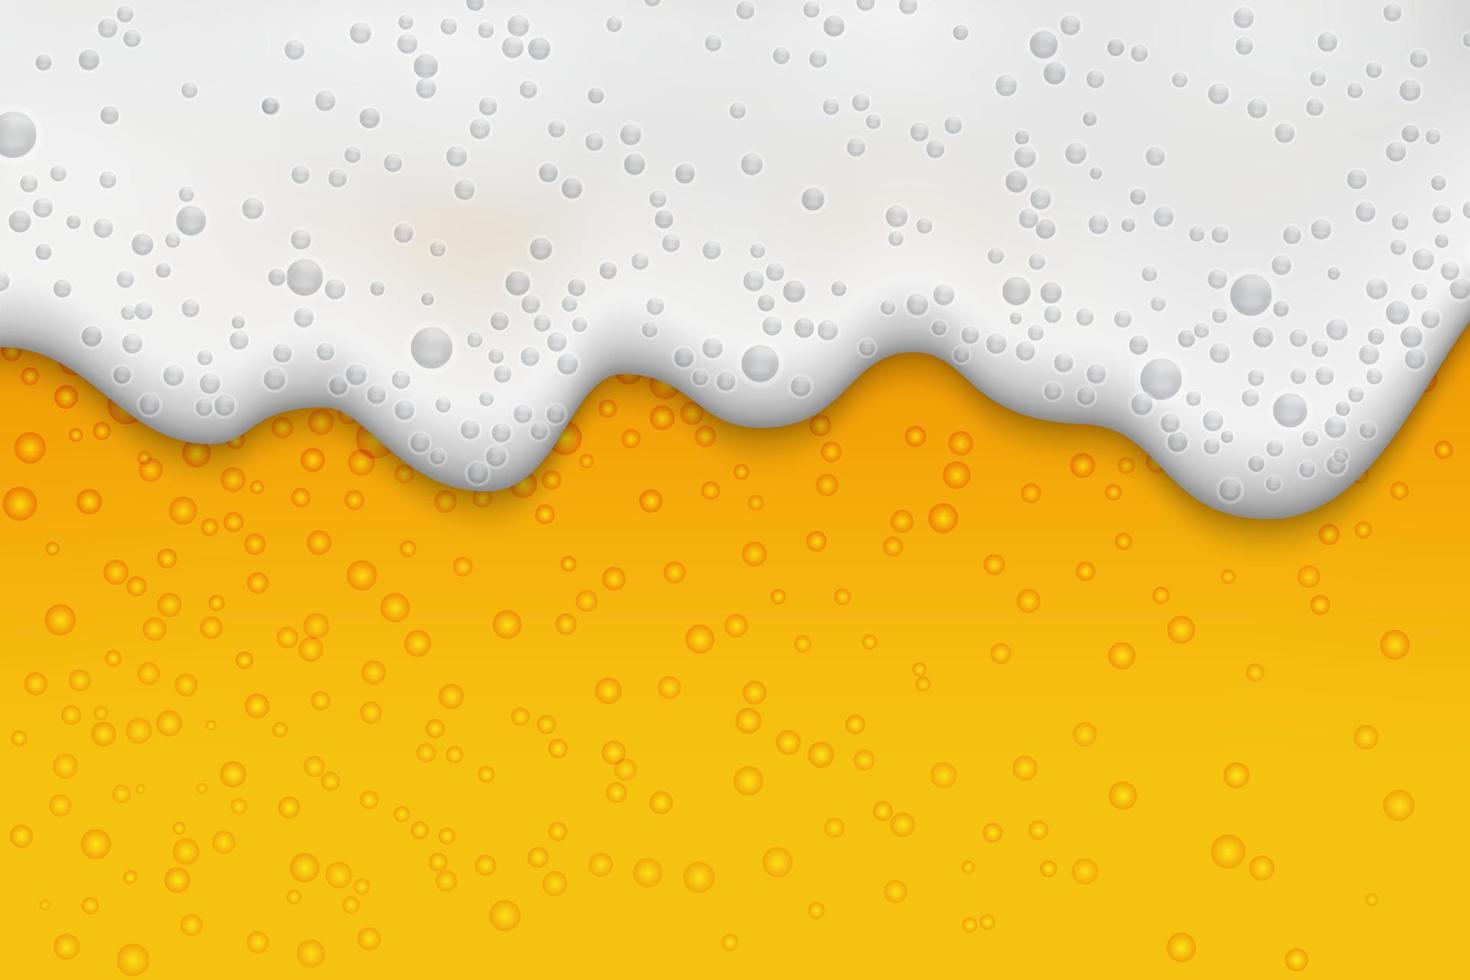 lager bier achtergrond met schuim en bubbels vector